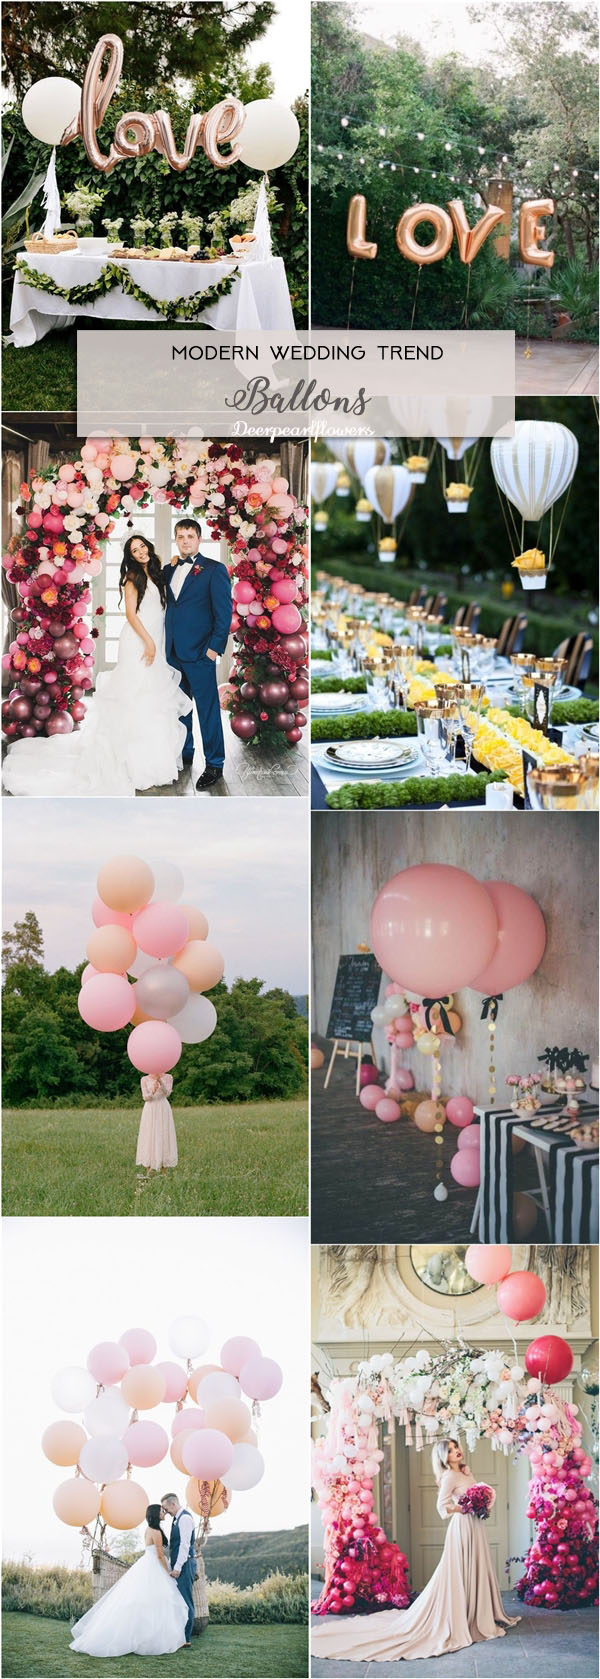 Ballon Wedding Ideas for Modern Wedding